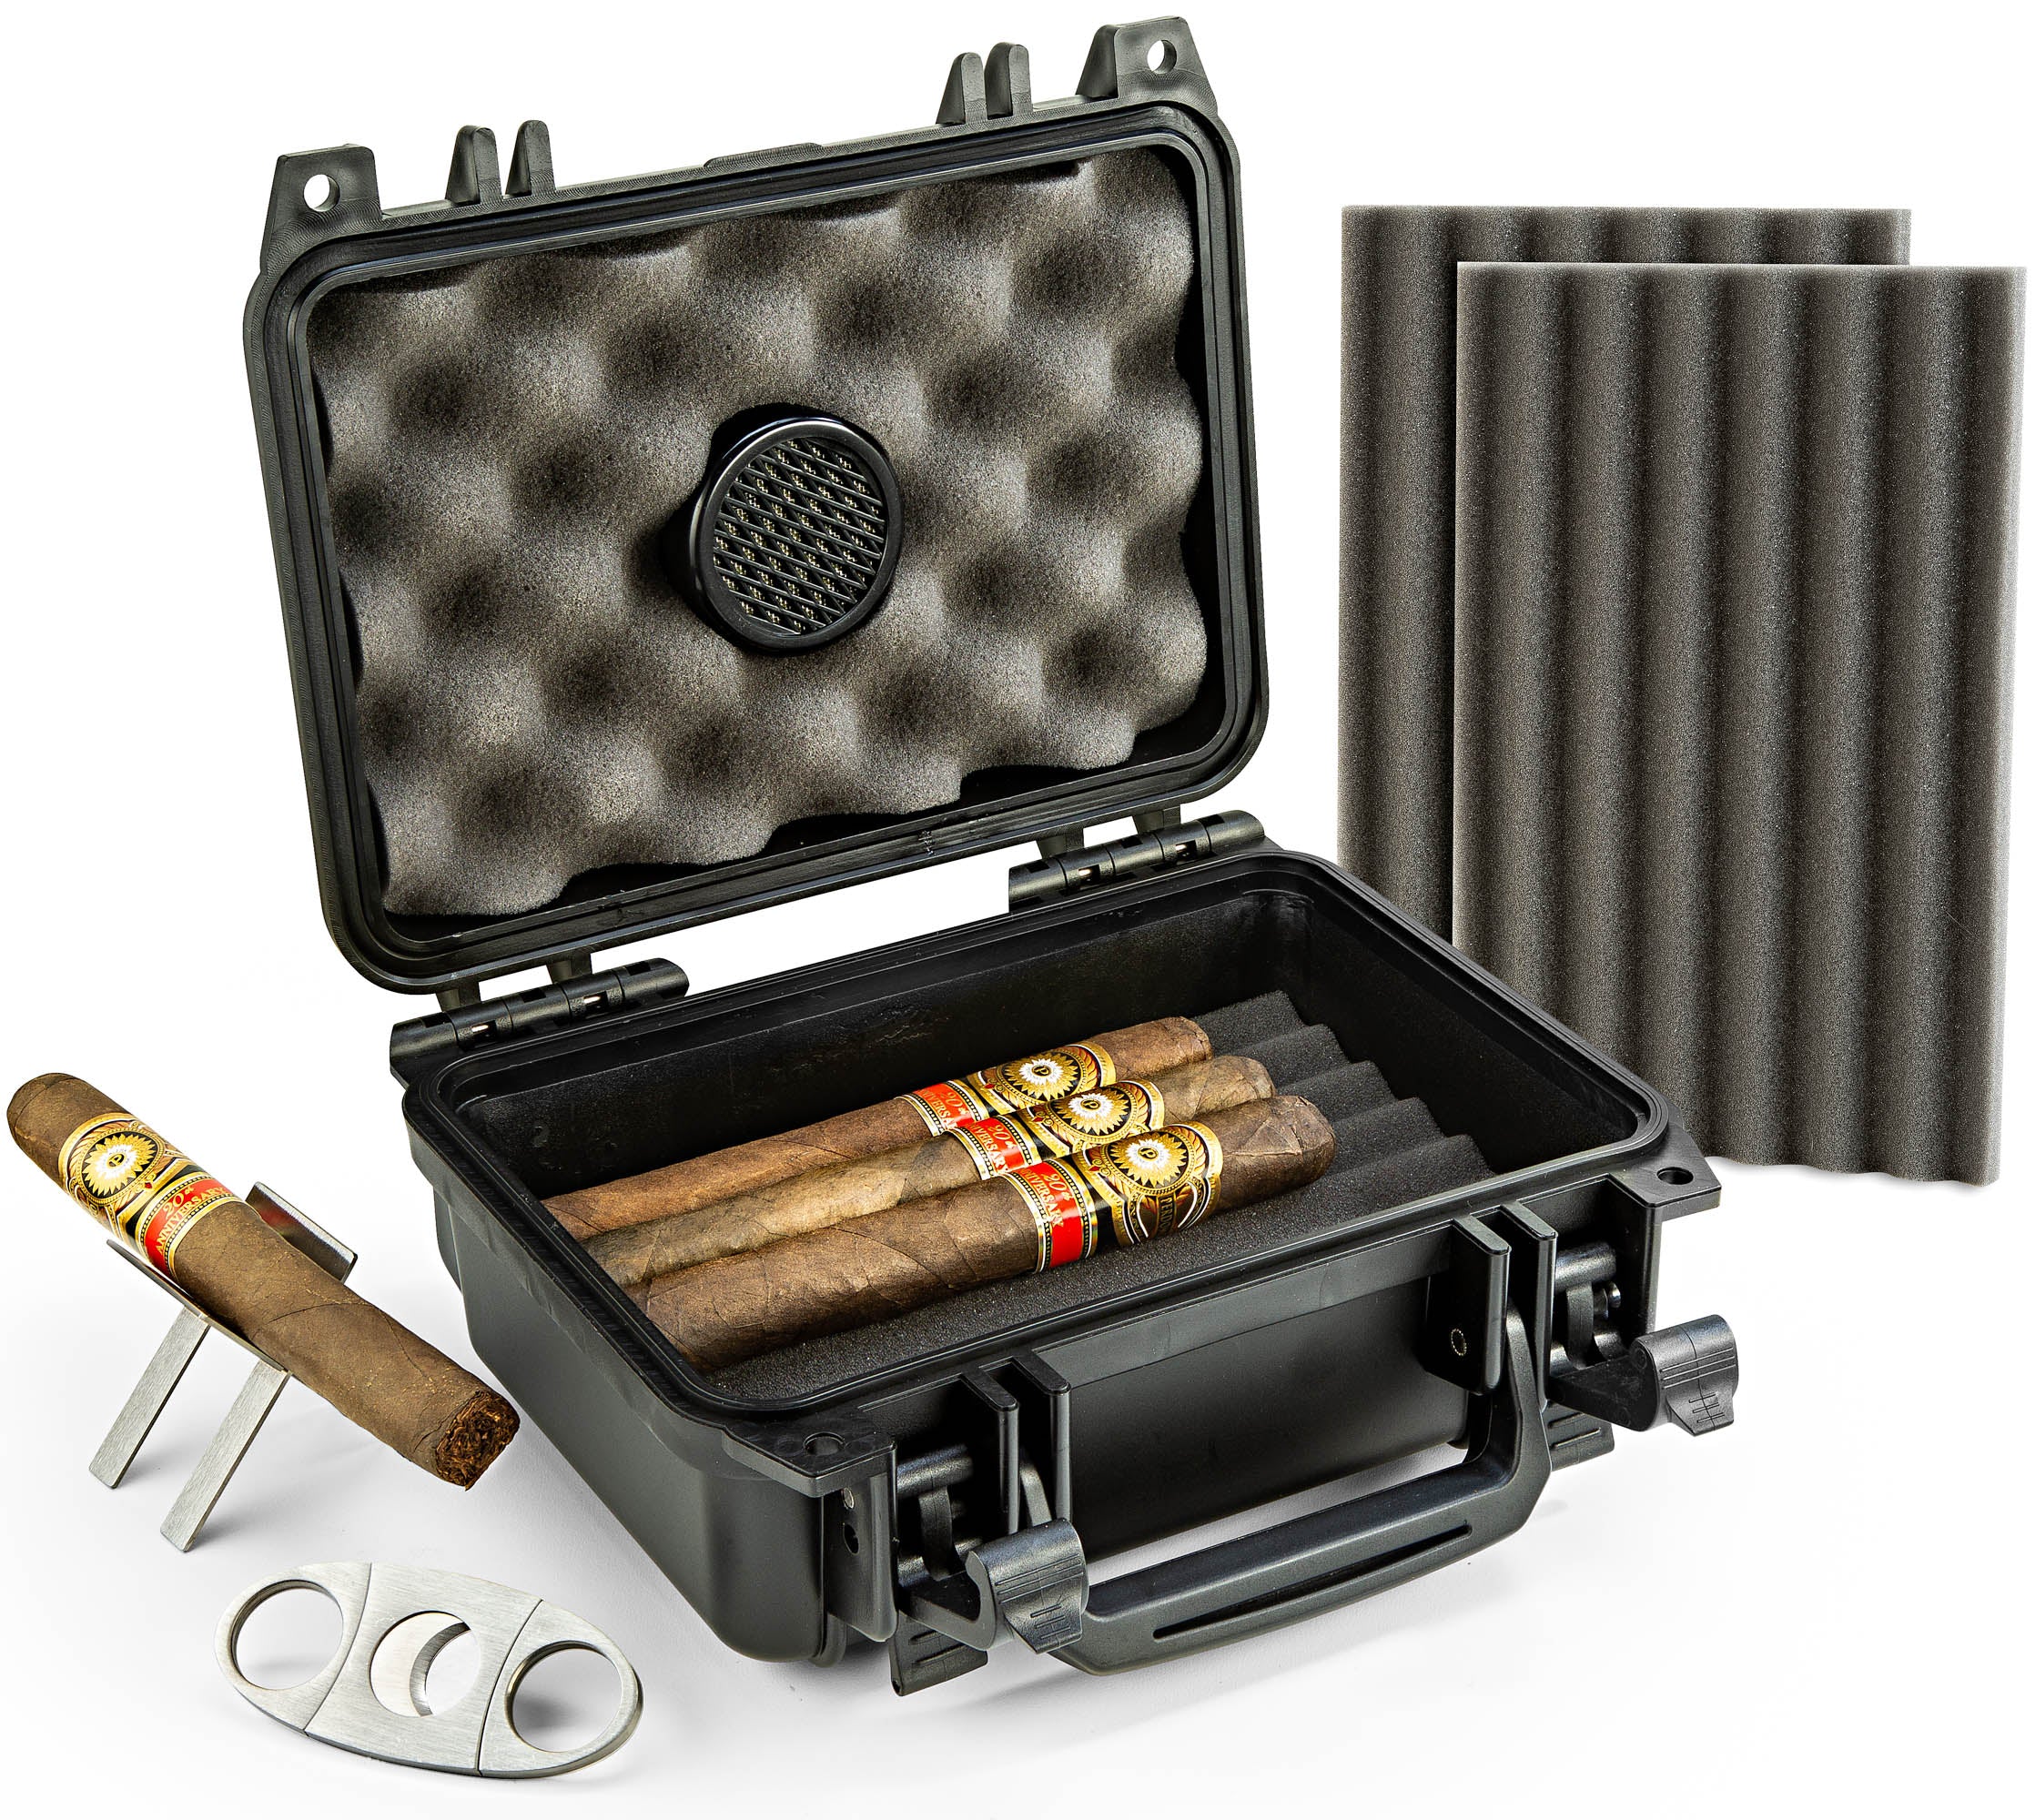 防水旅行雪茄保湿盒-容纳多达20支雪茄-配件套件(包括雪茄切割器 & 可折叠的雪茄站)